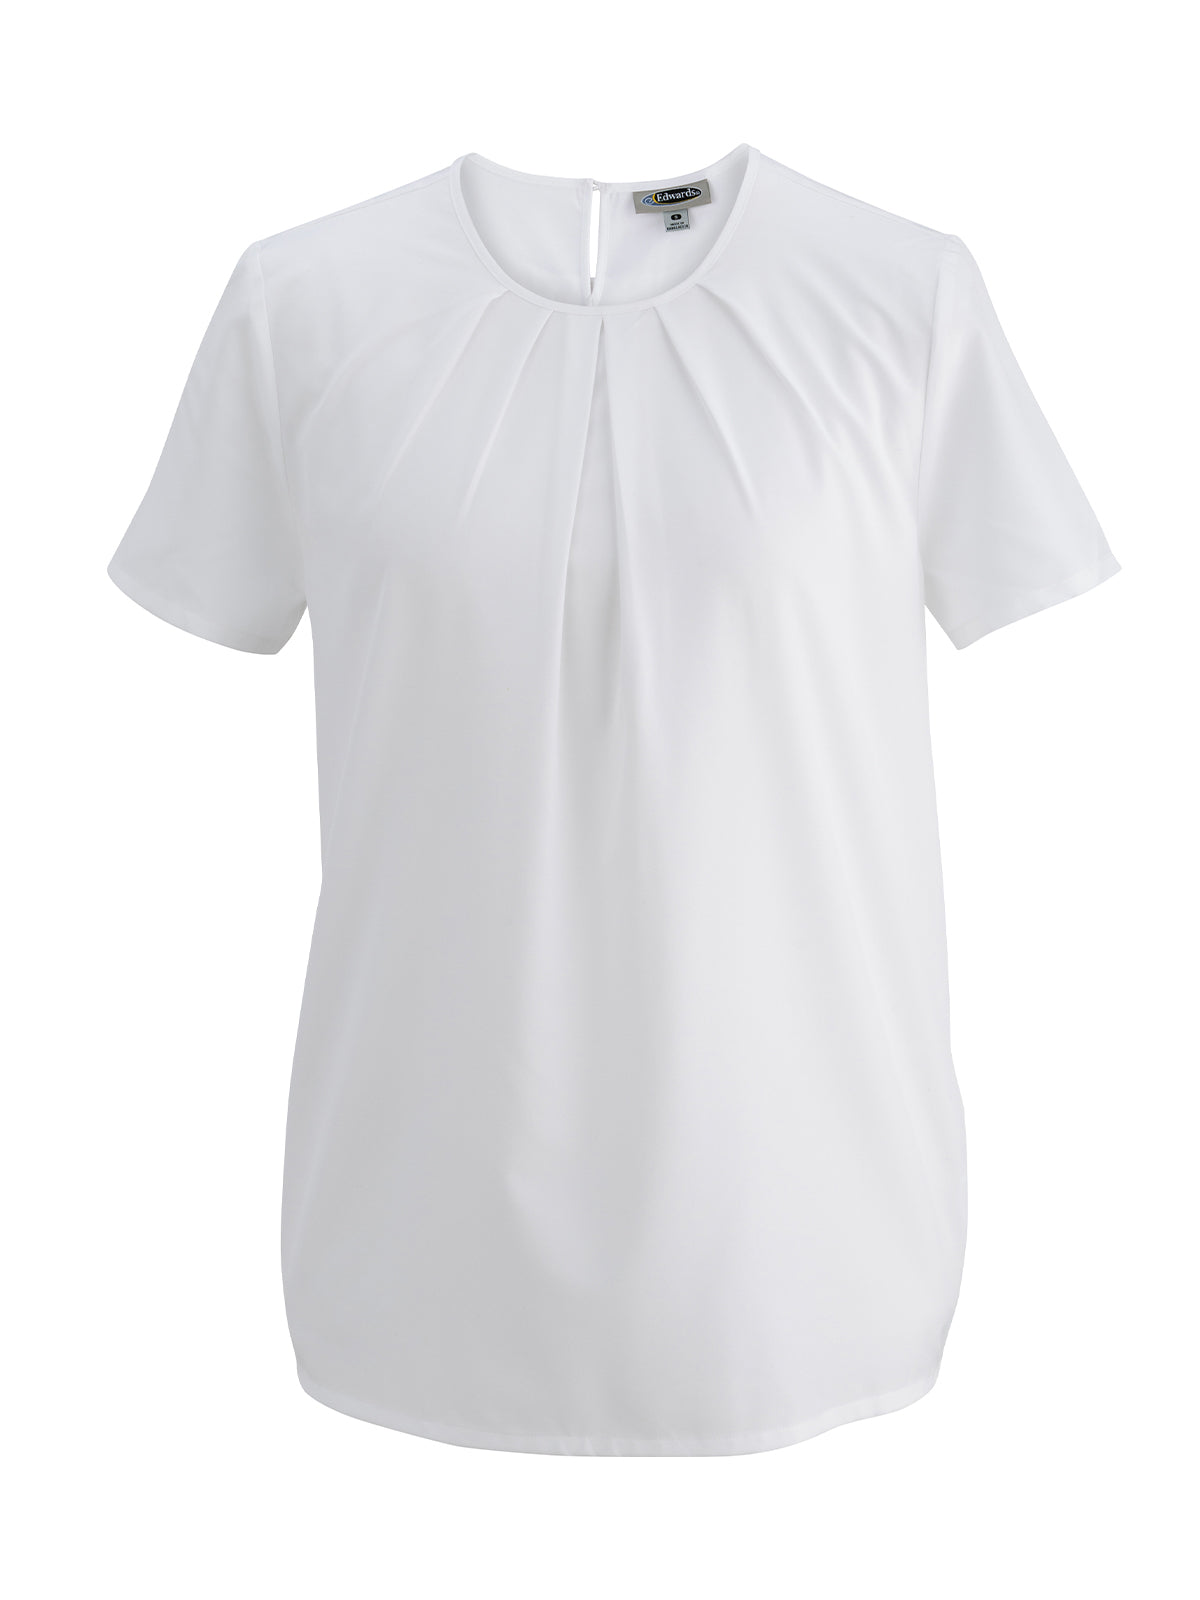 Women's Jewel Neck Shirt - 5224 - White